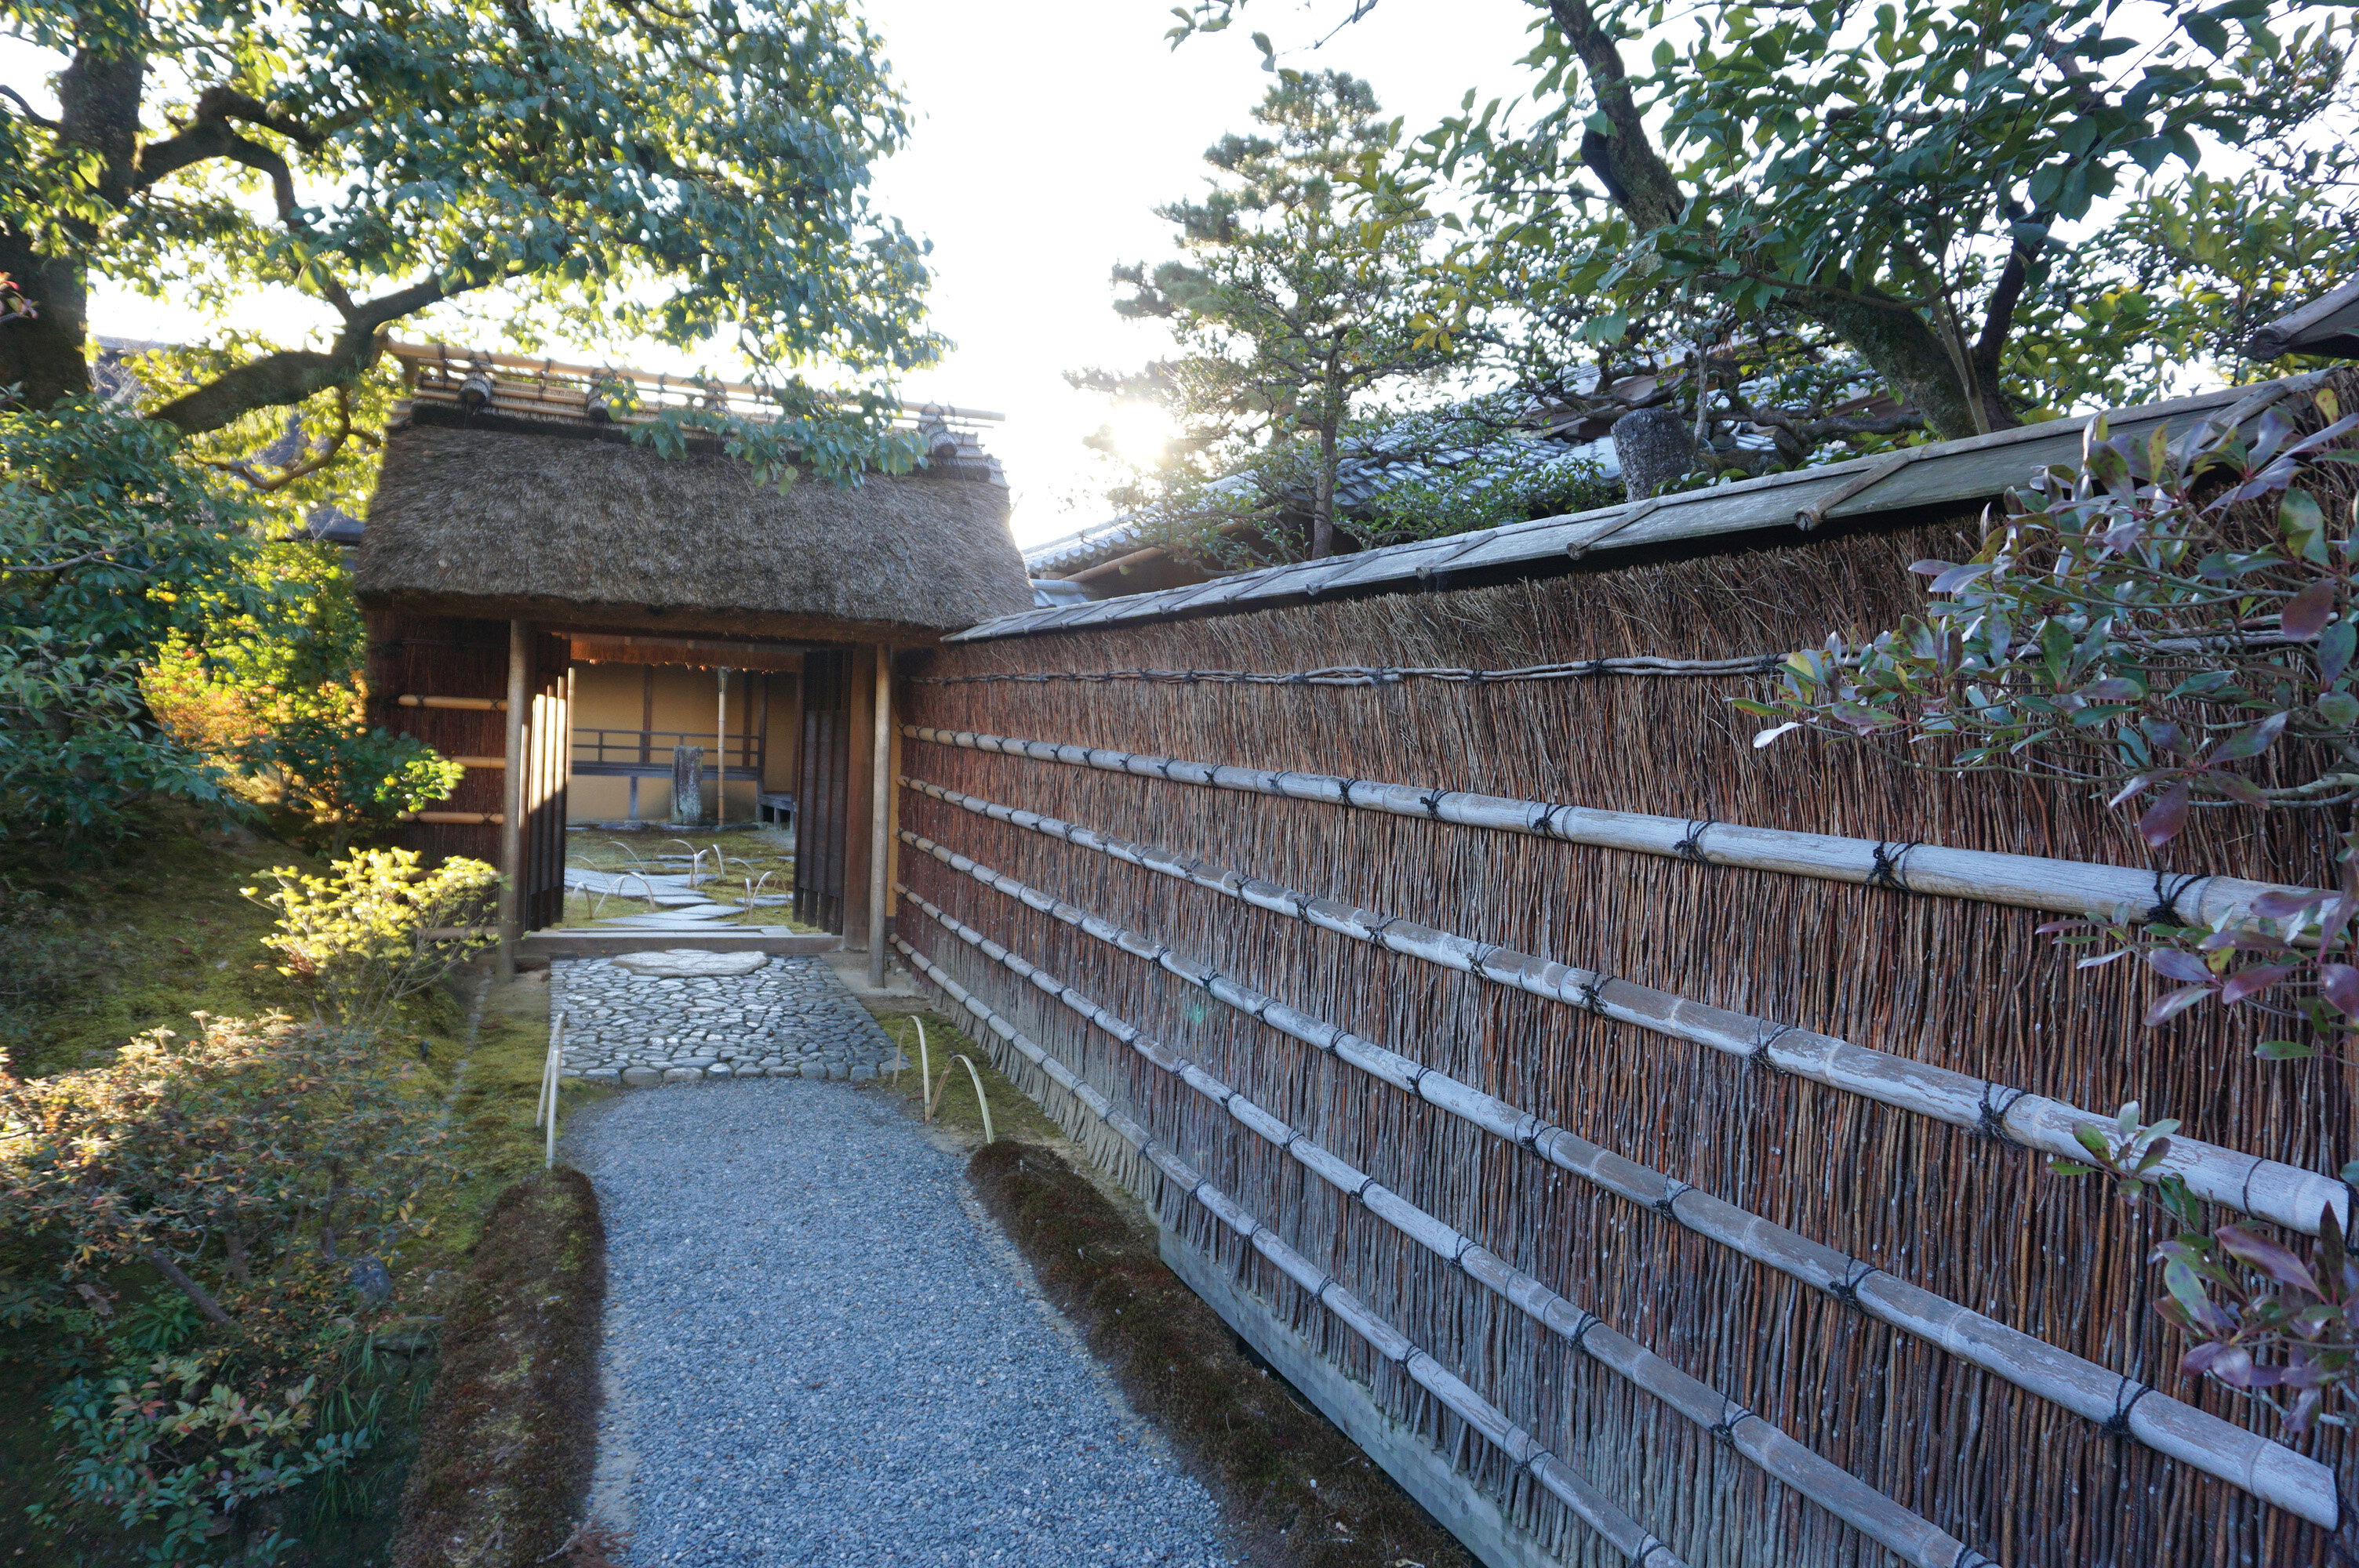 京都クロモジ文化の再発見、「絞り染め」と邪気を払う「垣根」 